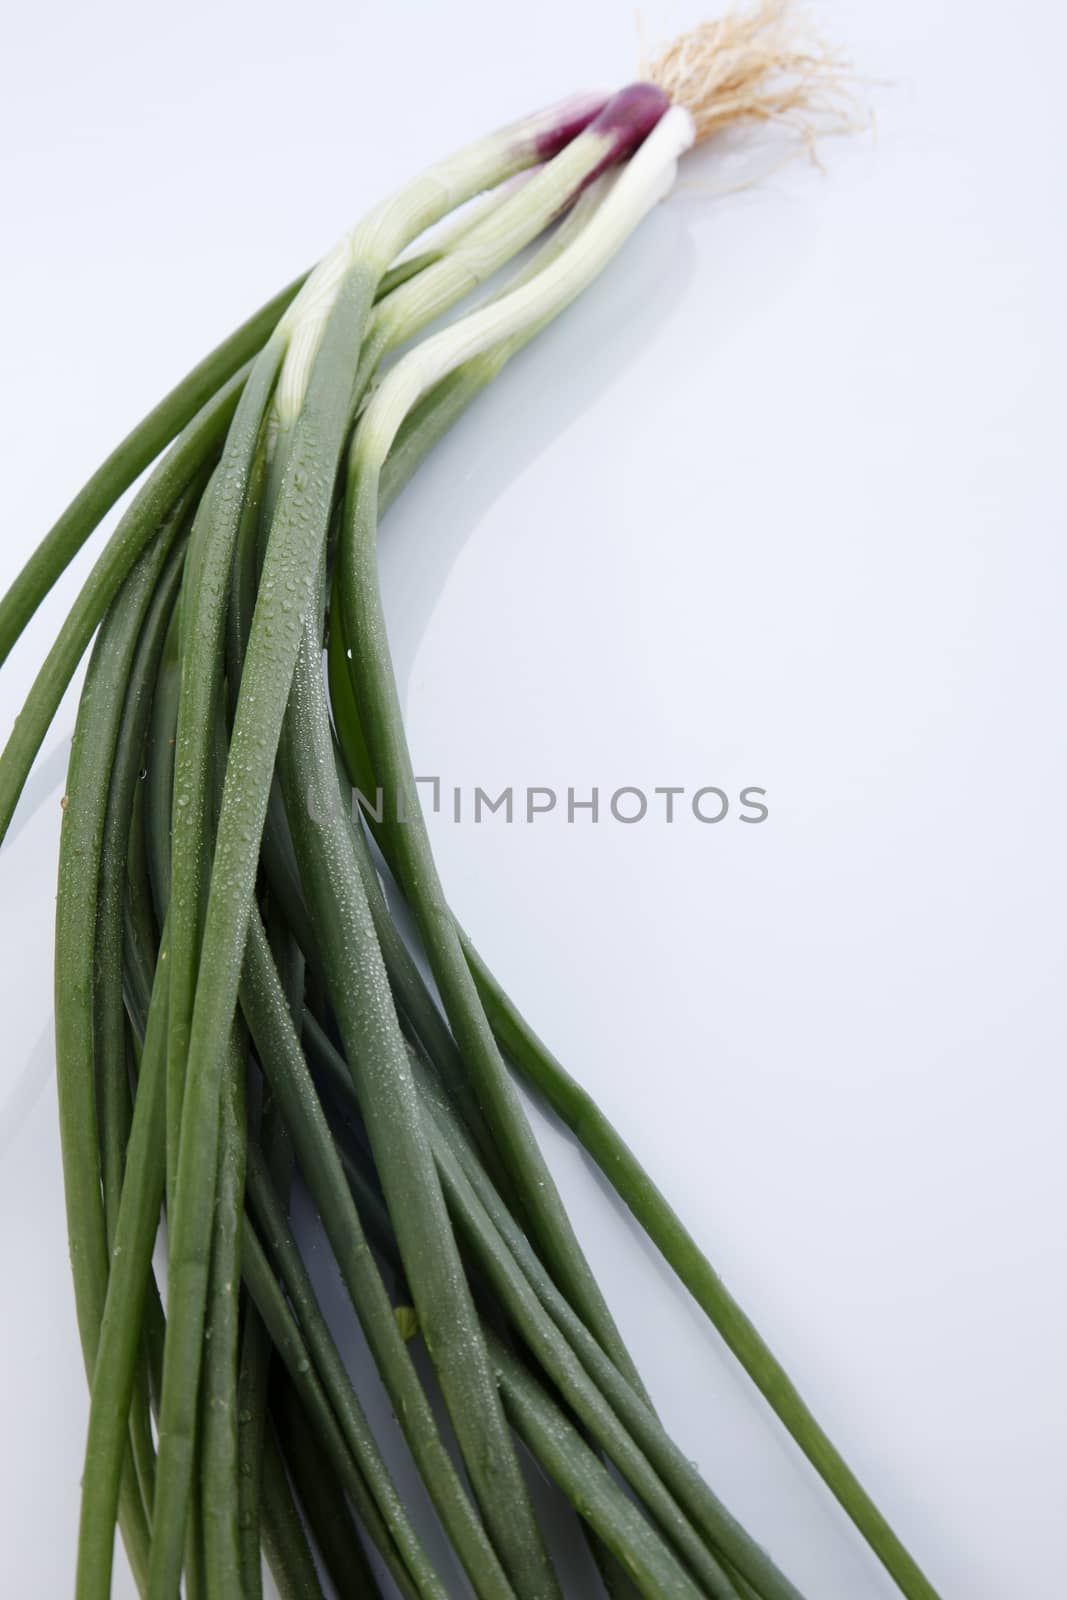 spring onion by eskaylim